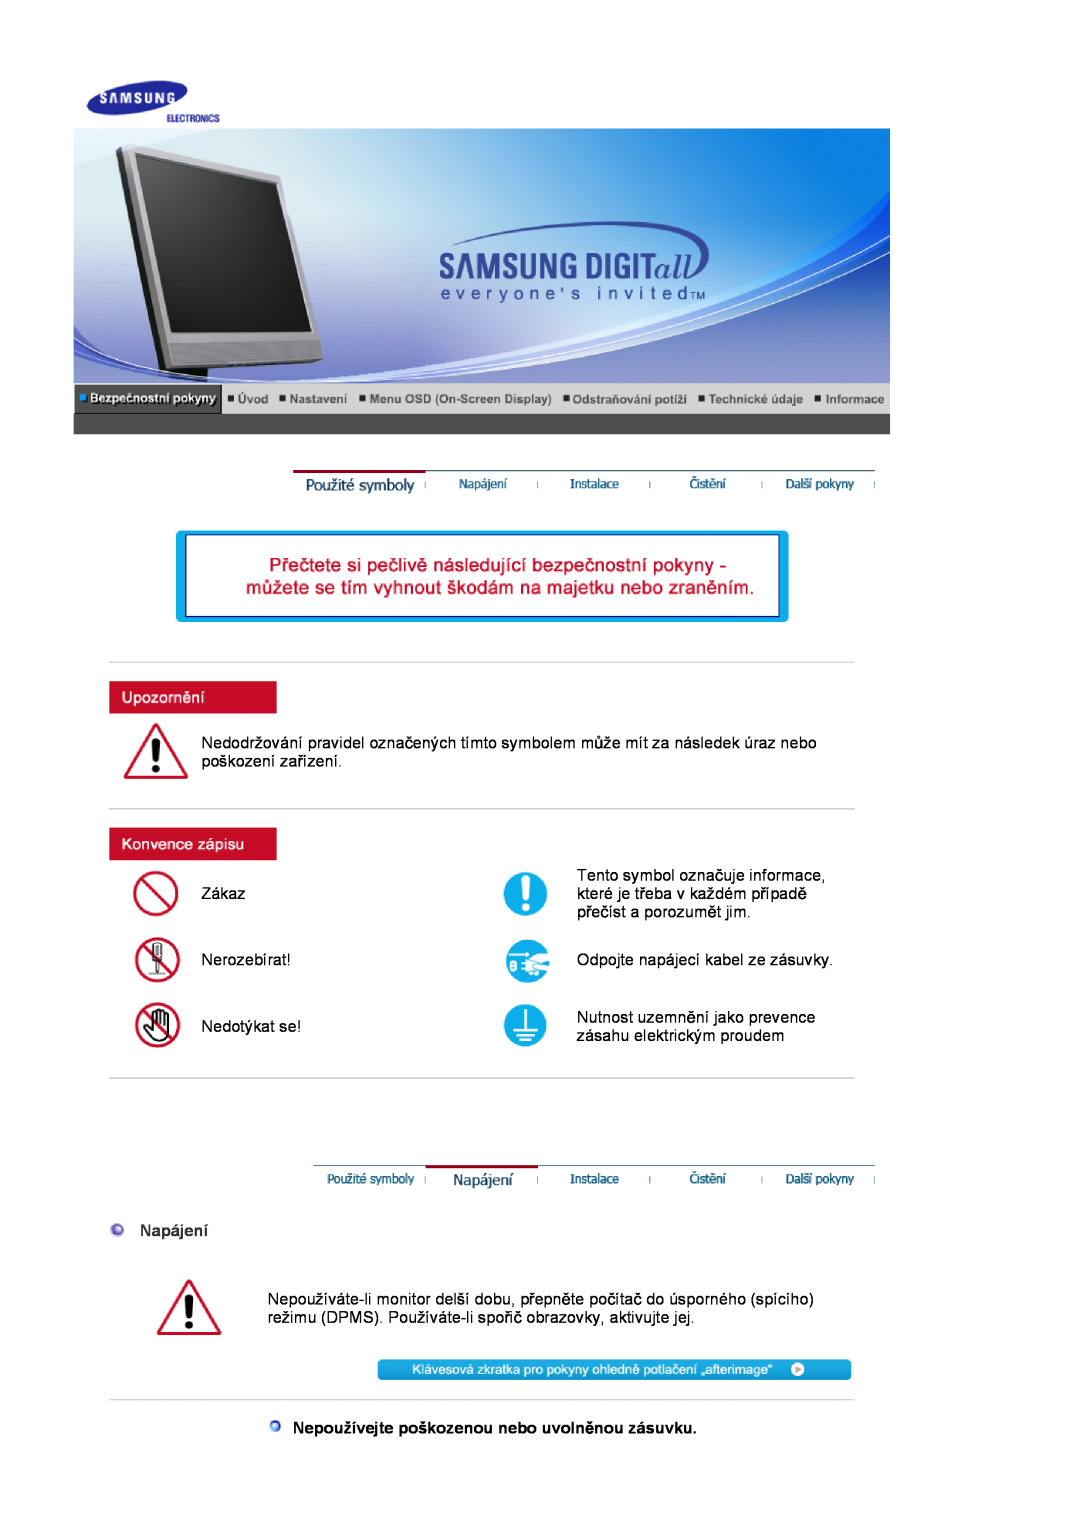 Samsung LS17MJSKSZ/EDC, LS17MJSTSE/EDC, LS19MJSTS7/EDC manual Napájení, Nepoužívejte poškozenou nebo uvolnČnou zásuvku 